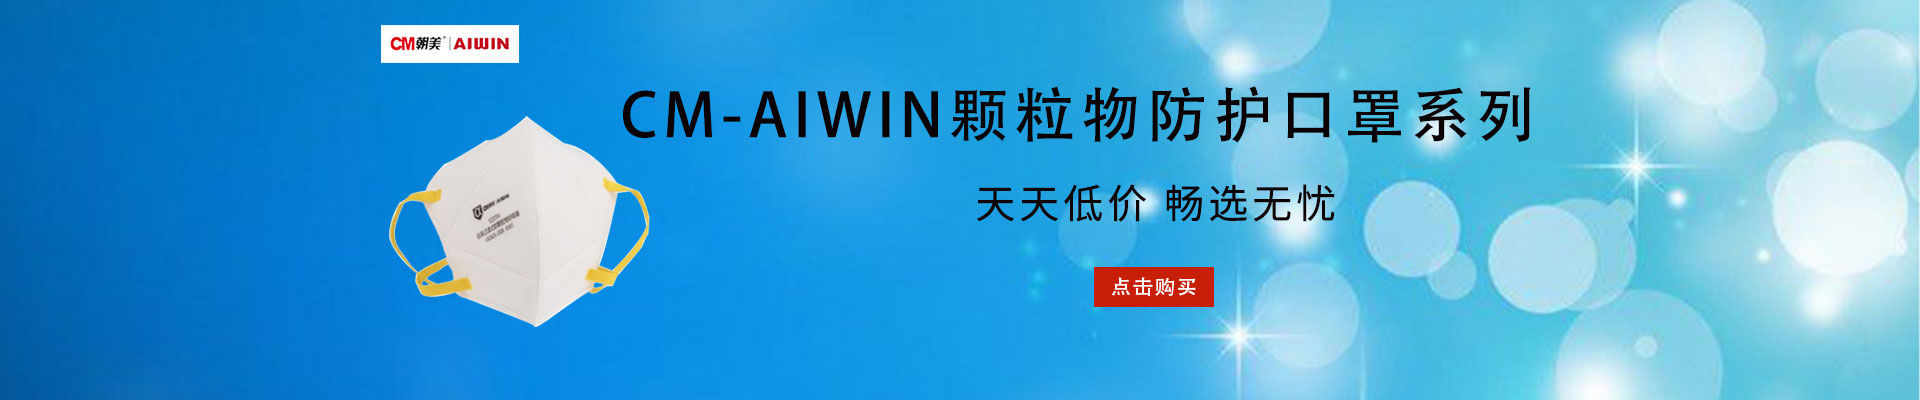 CM-AIWIN|呼吸防护